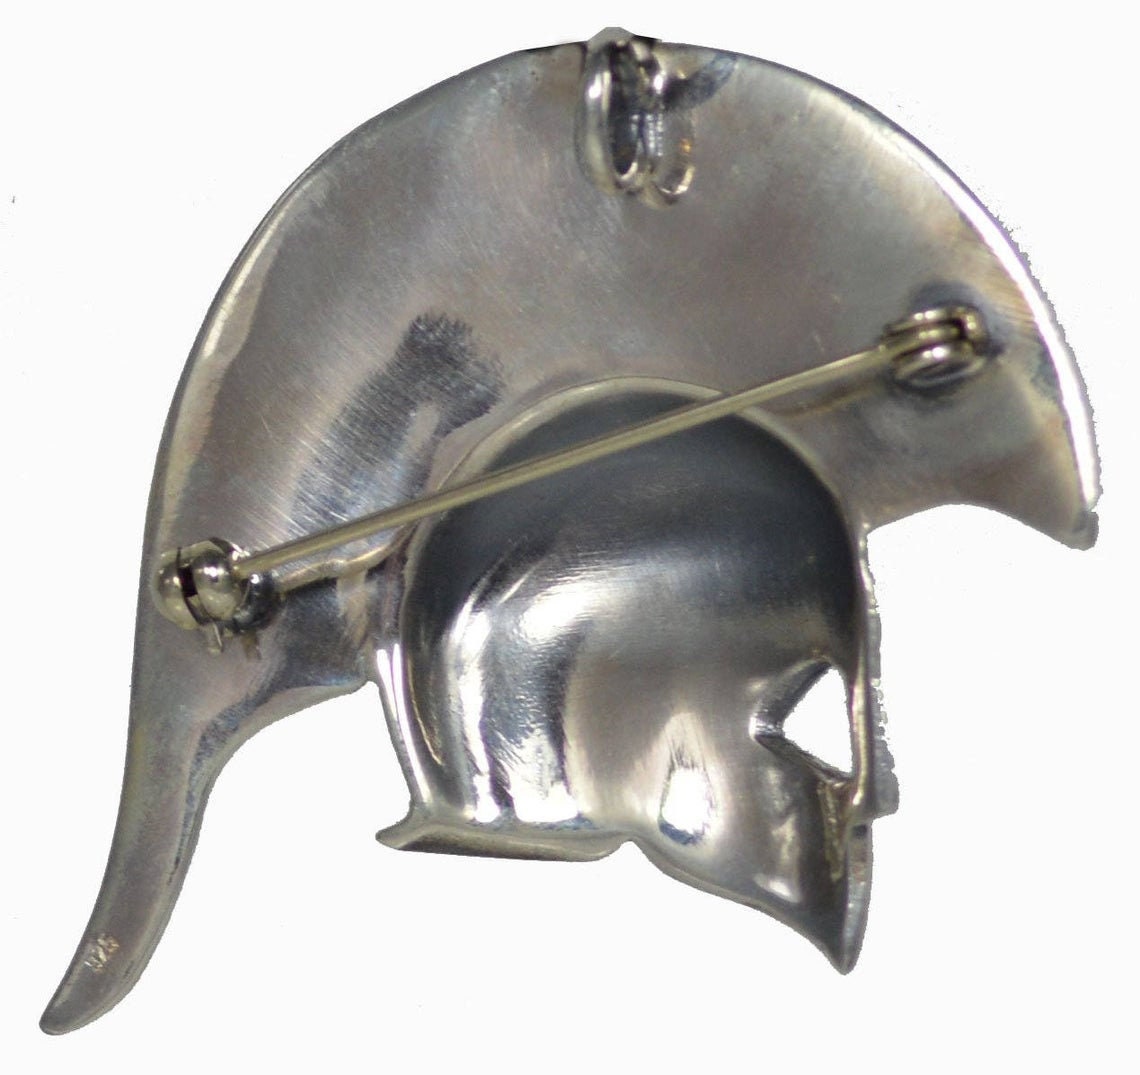 Spartan Helmet  - King Leonidas  - 300 Spartans - Pendant, Brooch Pin -  - 925 Sterling Silver